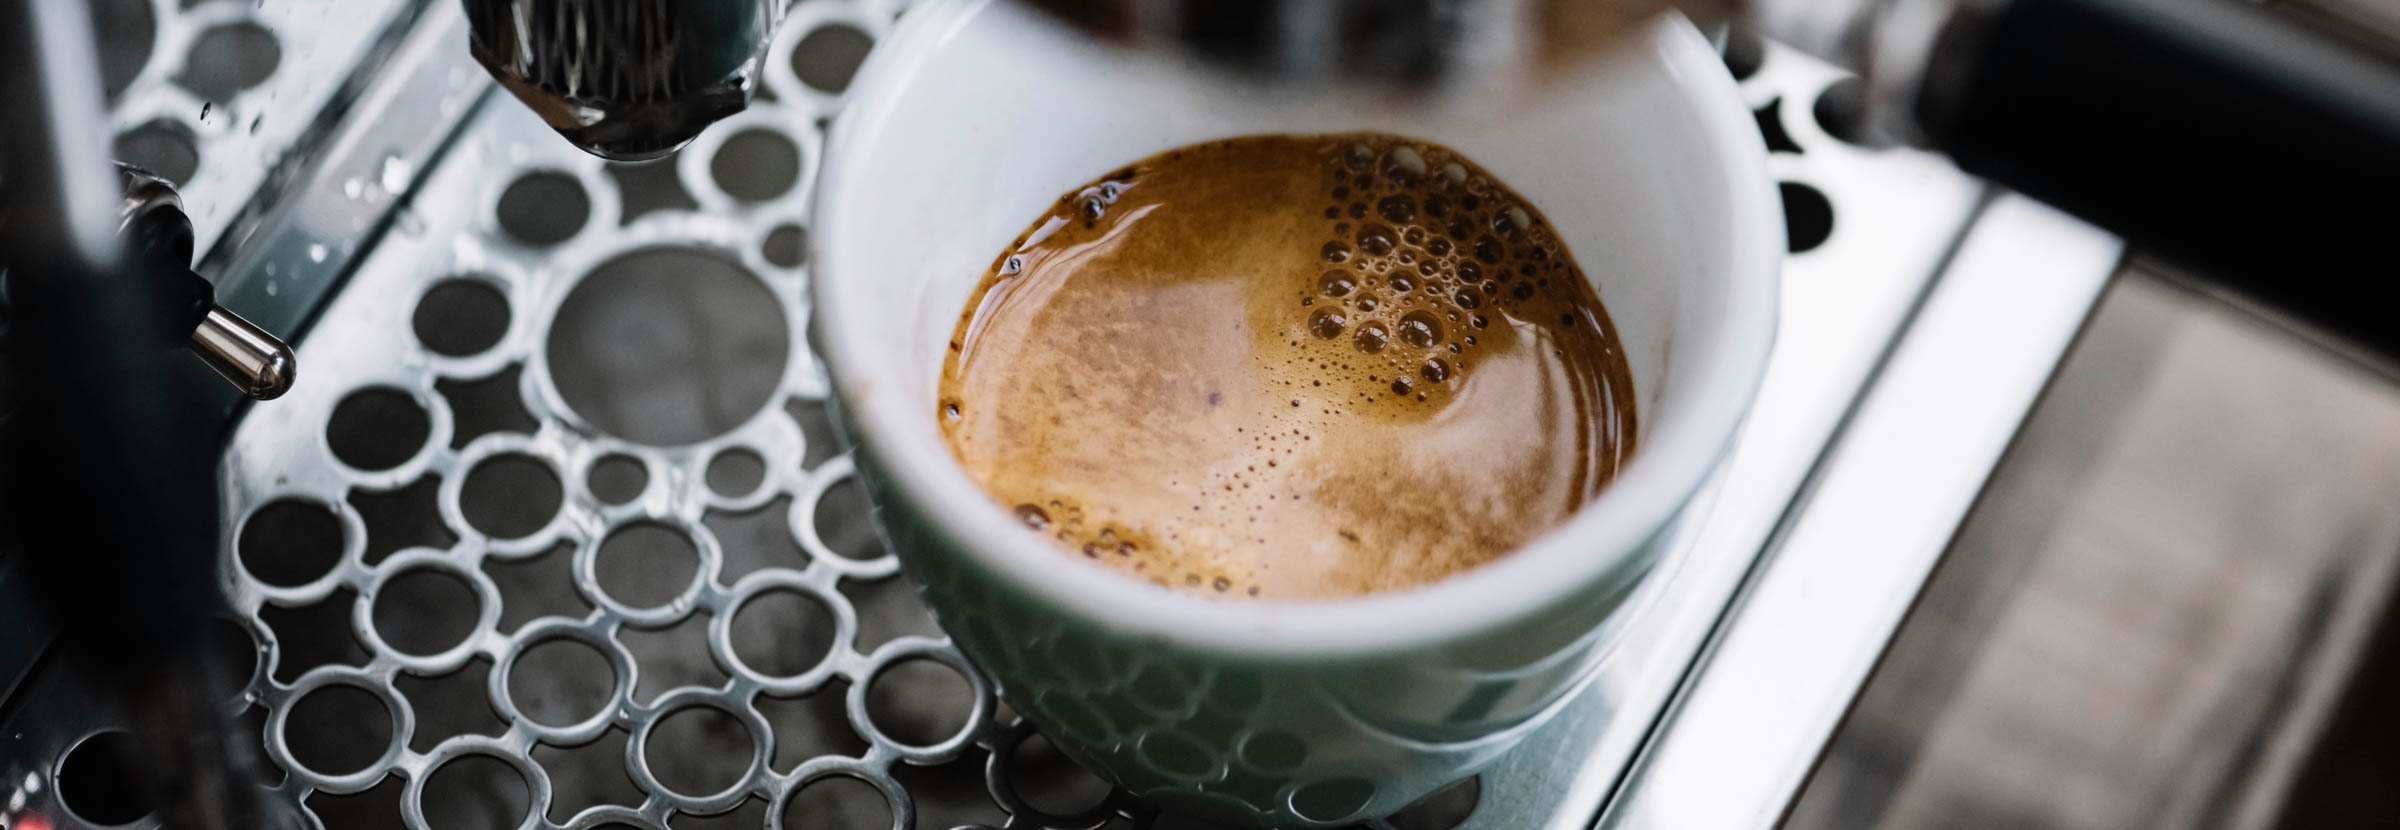 Vista de uma máquina durante extração de um espresso -- cafés de processamento natural são os melhores para o espresso?